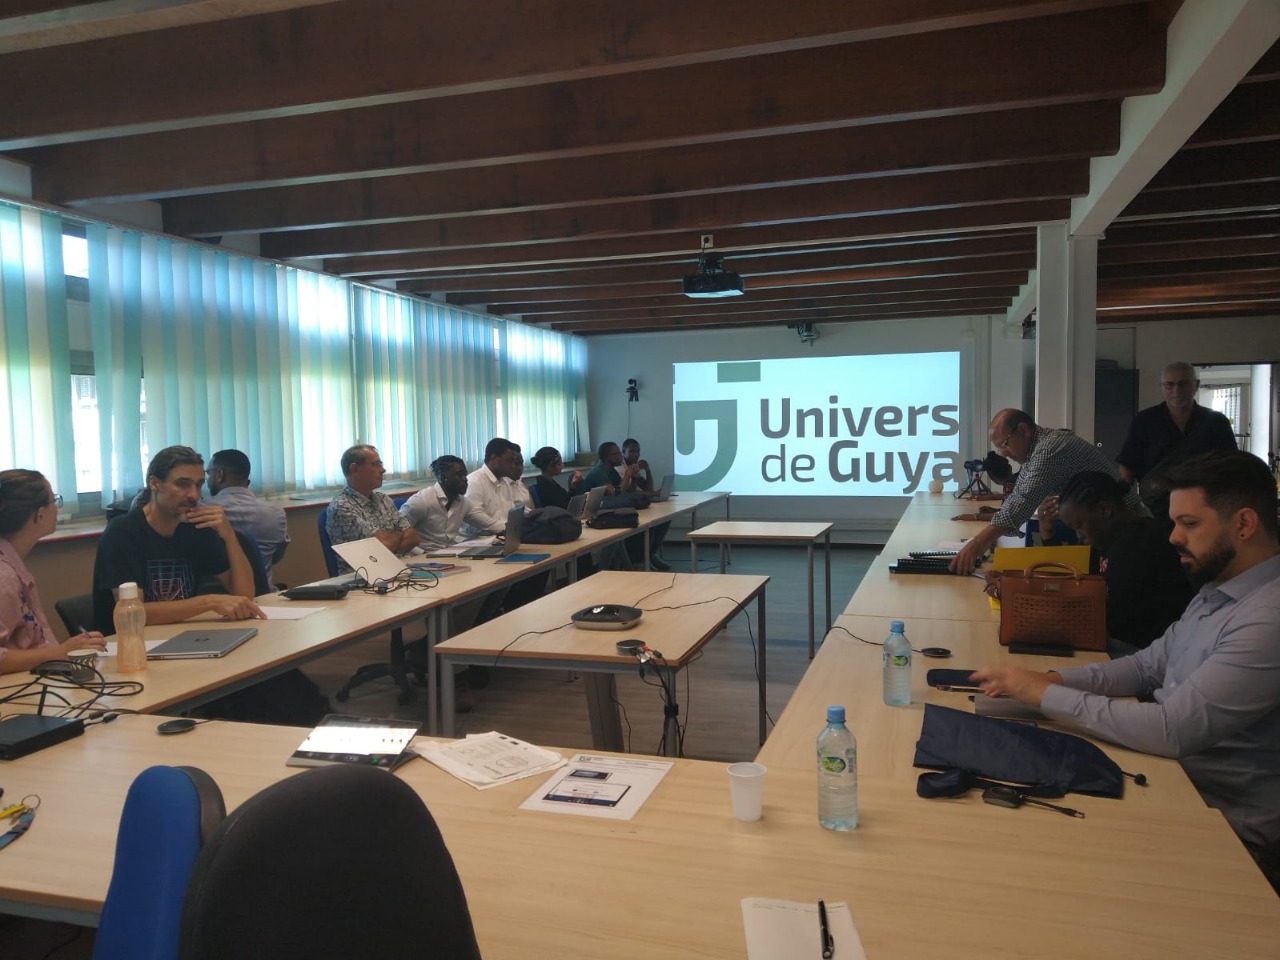 Docentes do curso de arquitetura participam de concurso internacional na Guiana Francesa